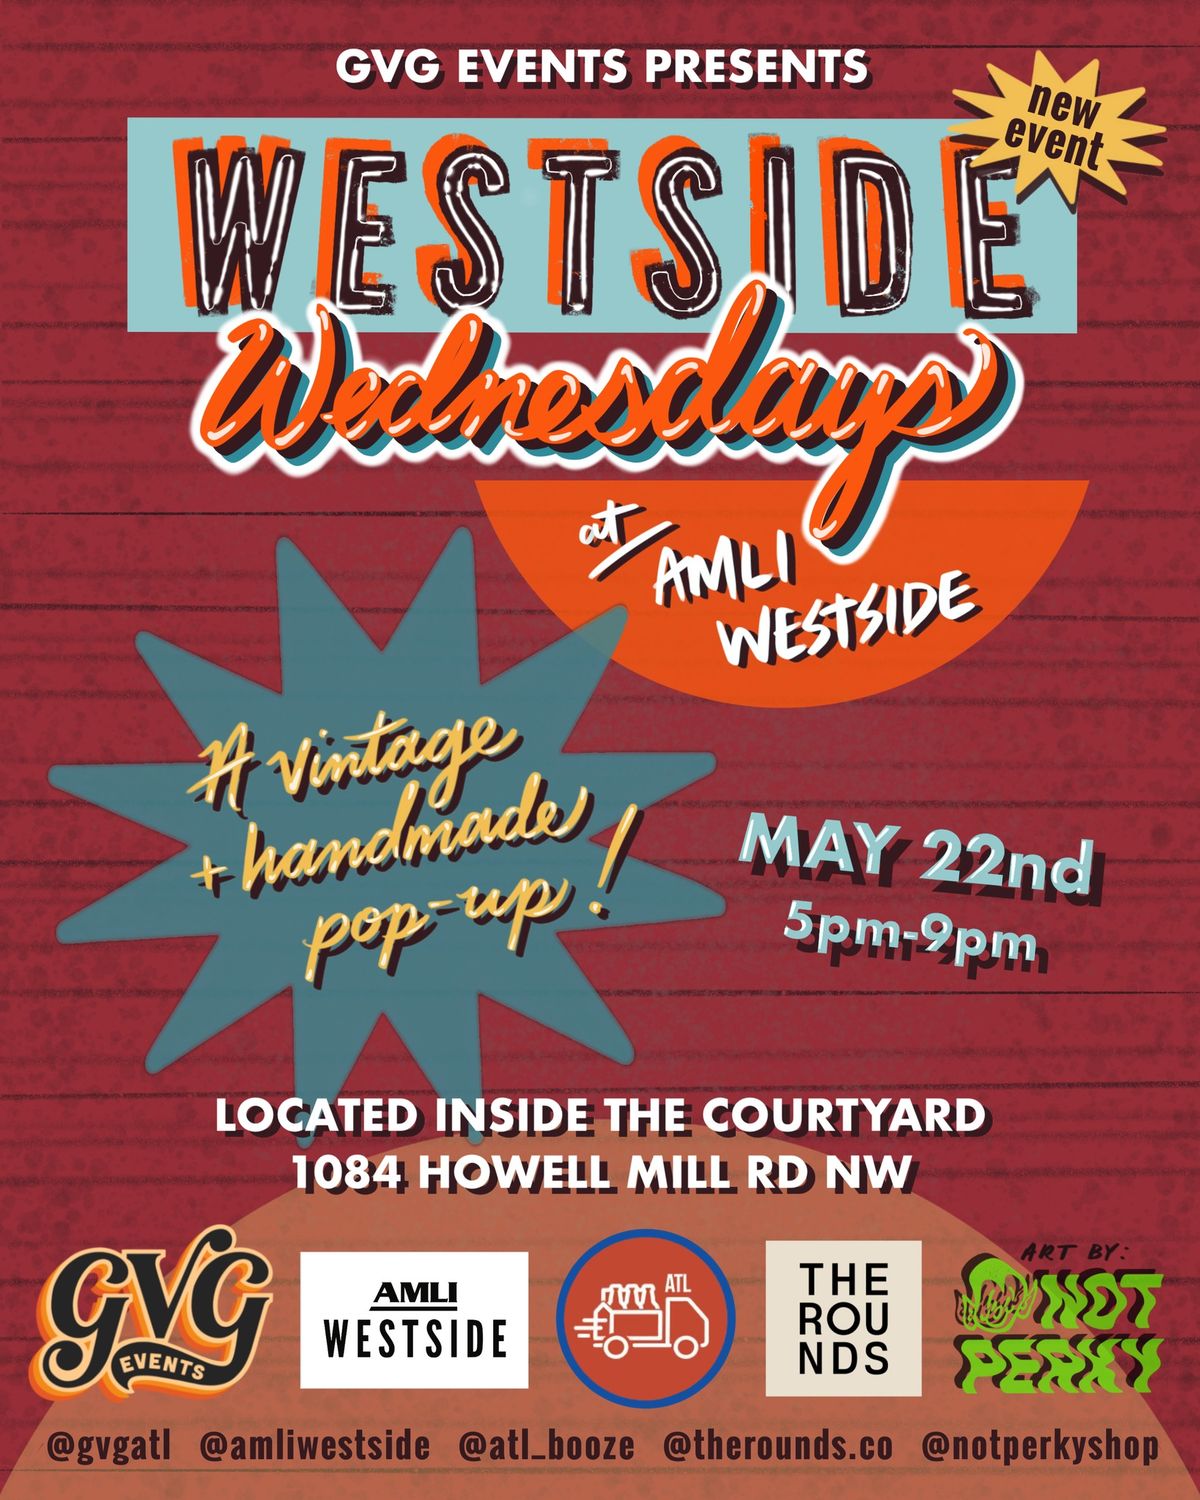 Westside Wednesdays at AMLI Westside